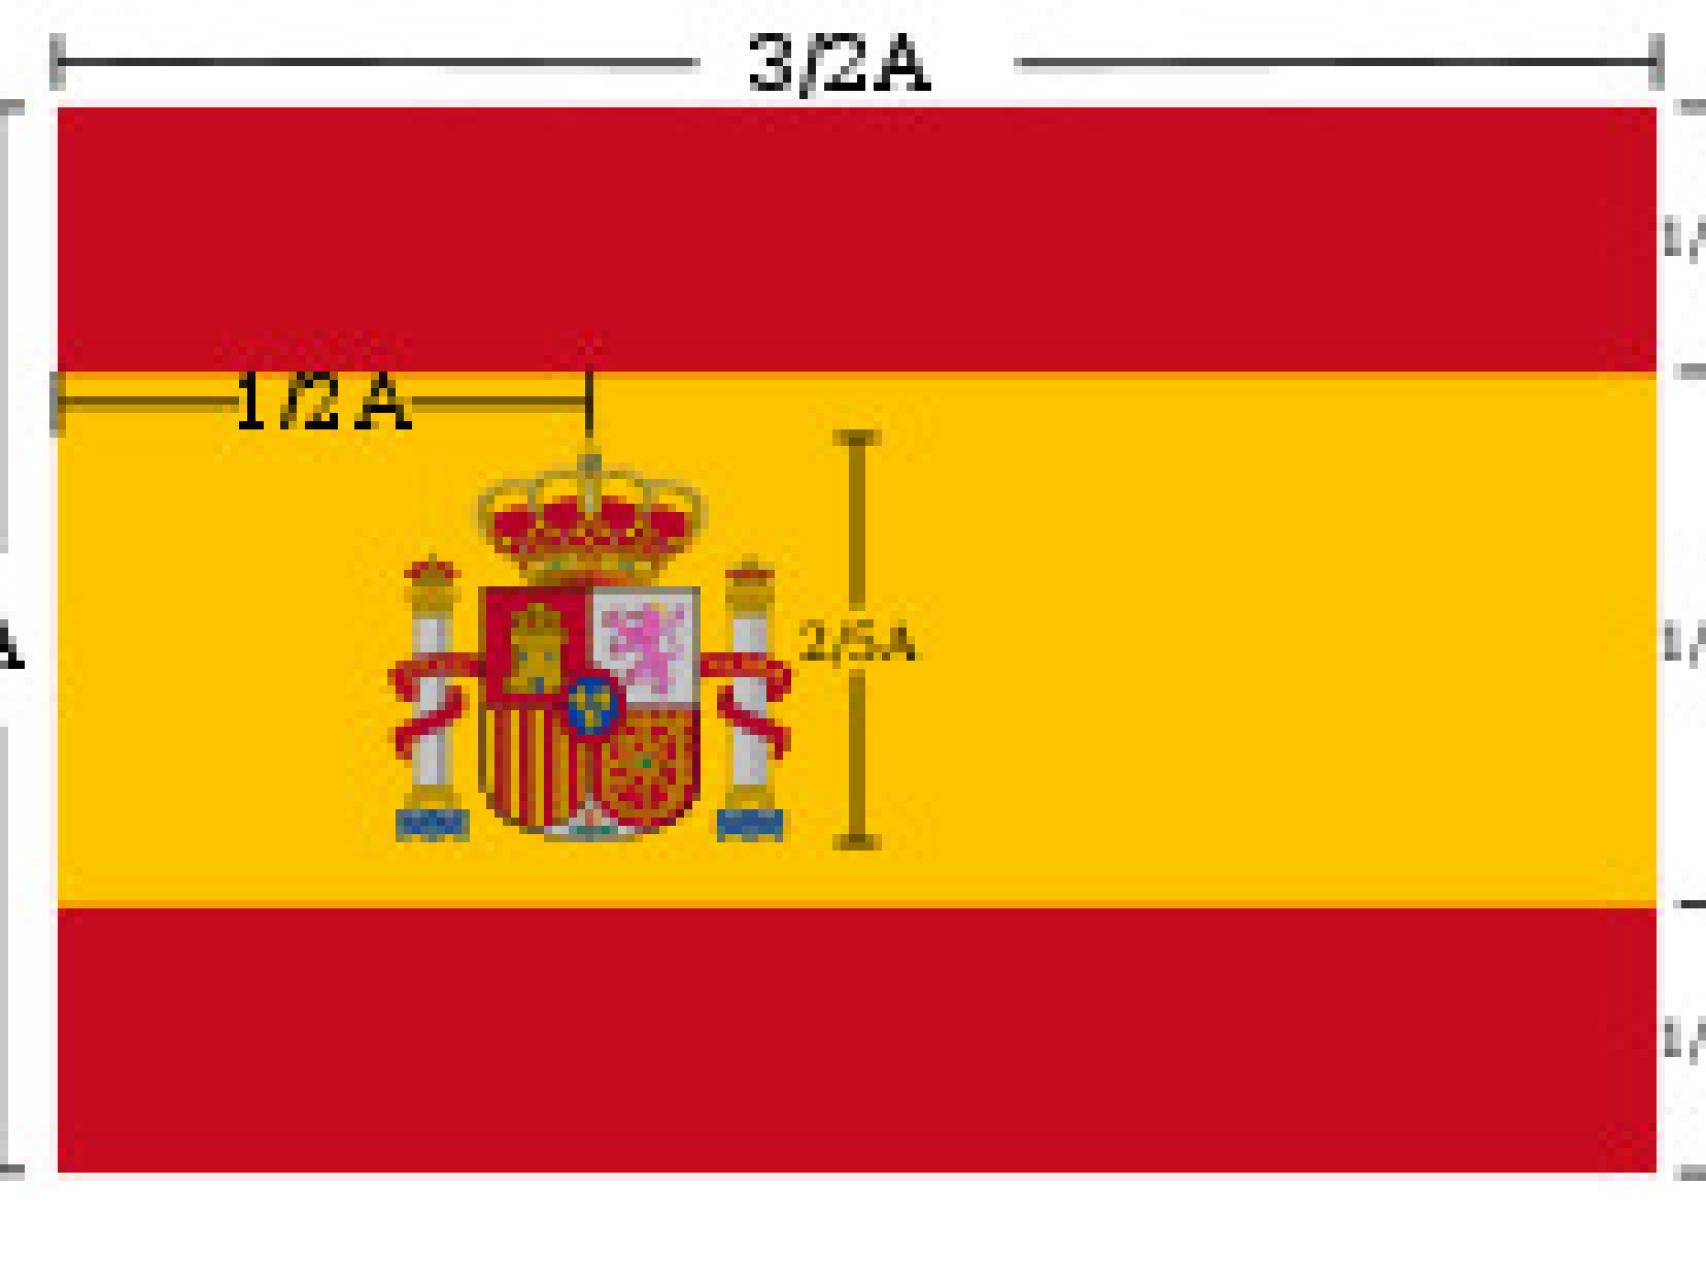 Nueve curiosidades sobre la bandera de España que tal vez desconocías